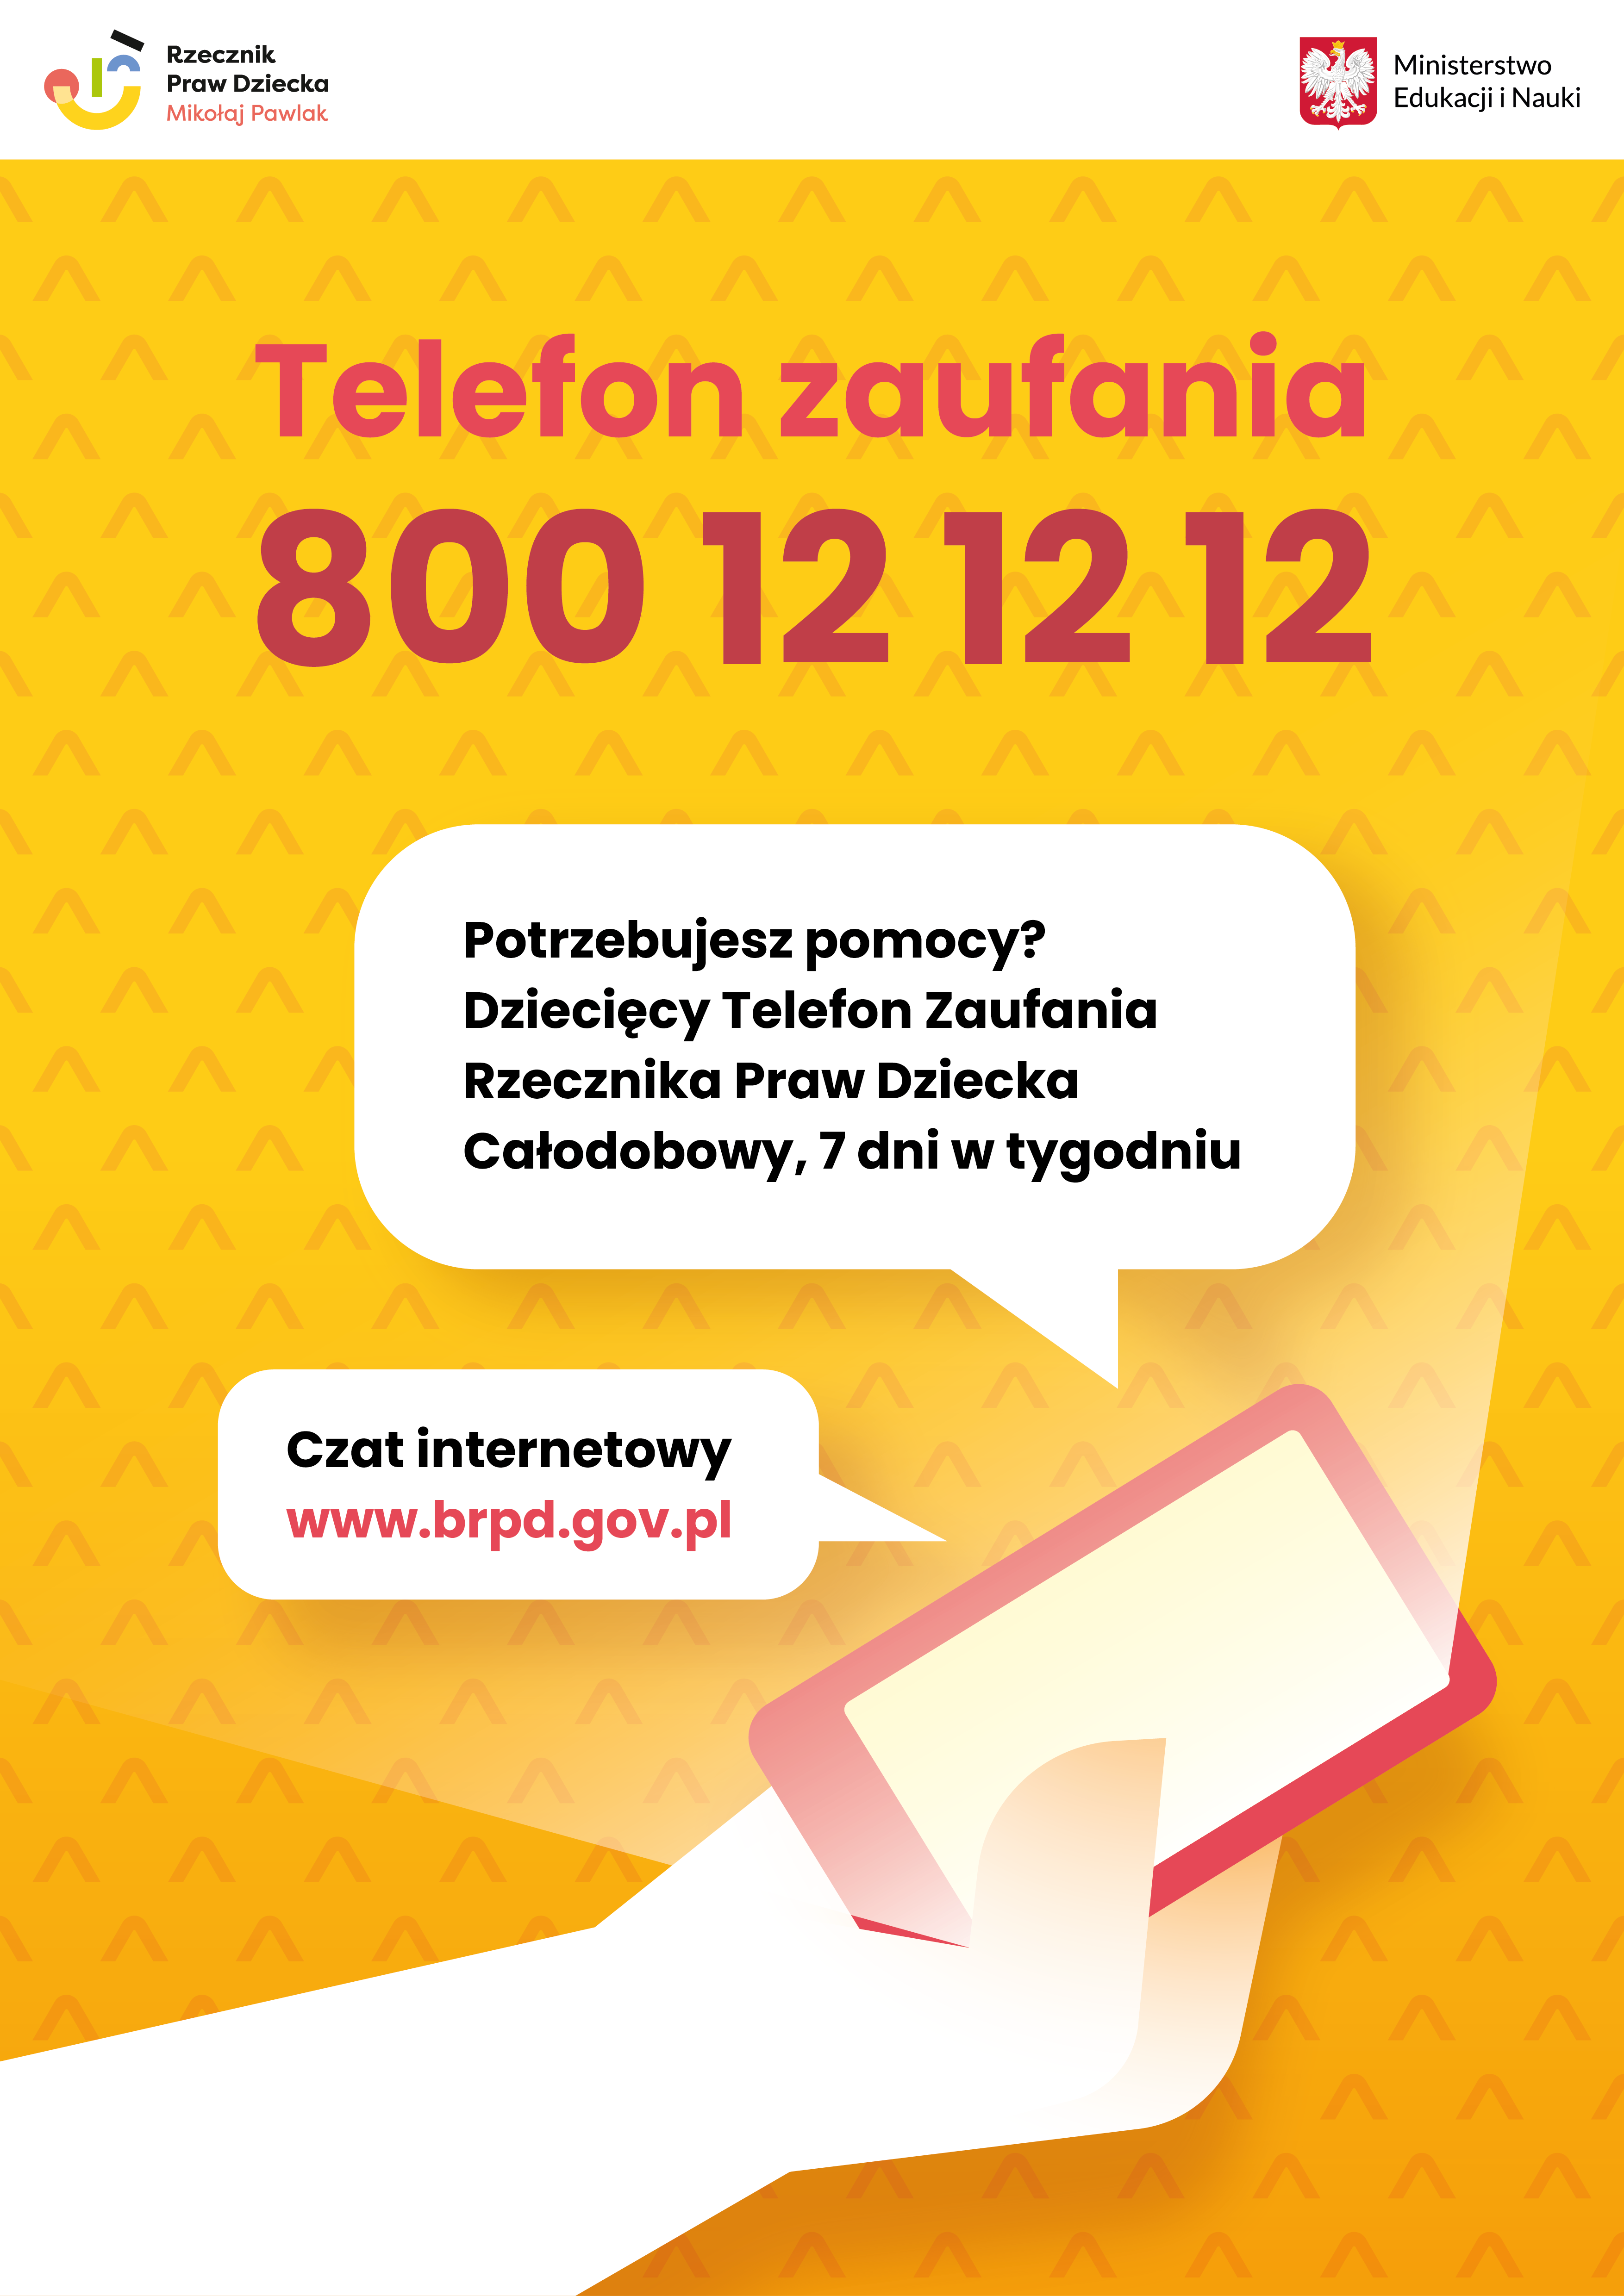 Plakat informujący o telefonie zaufania dla dzieci i młodzieży 800 12 12 12